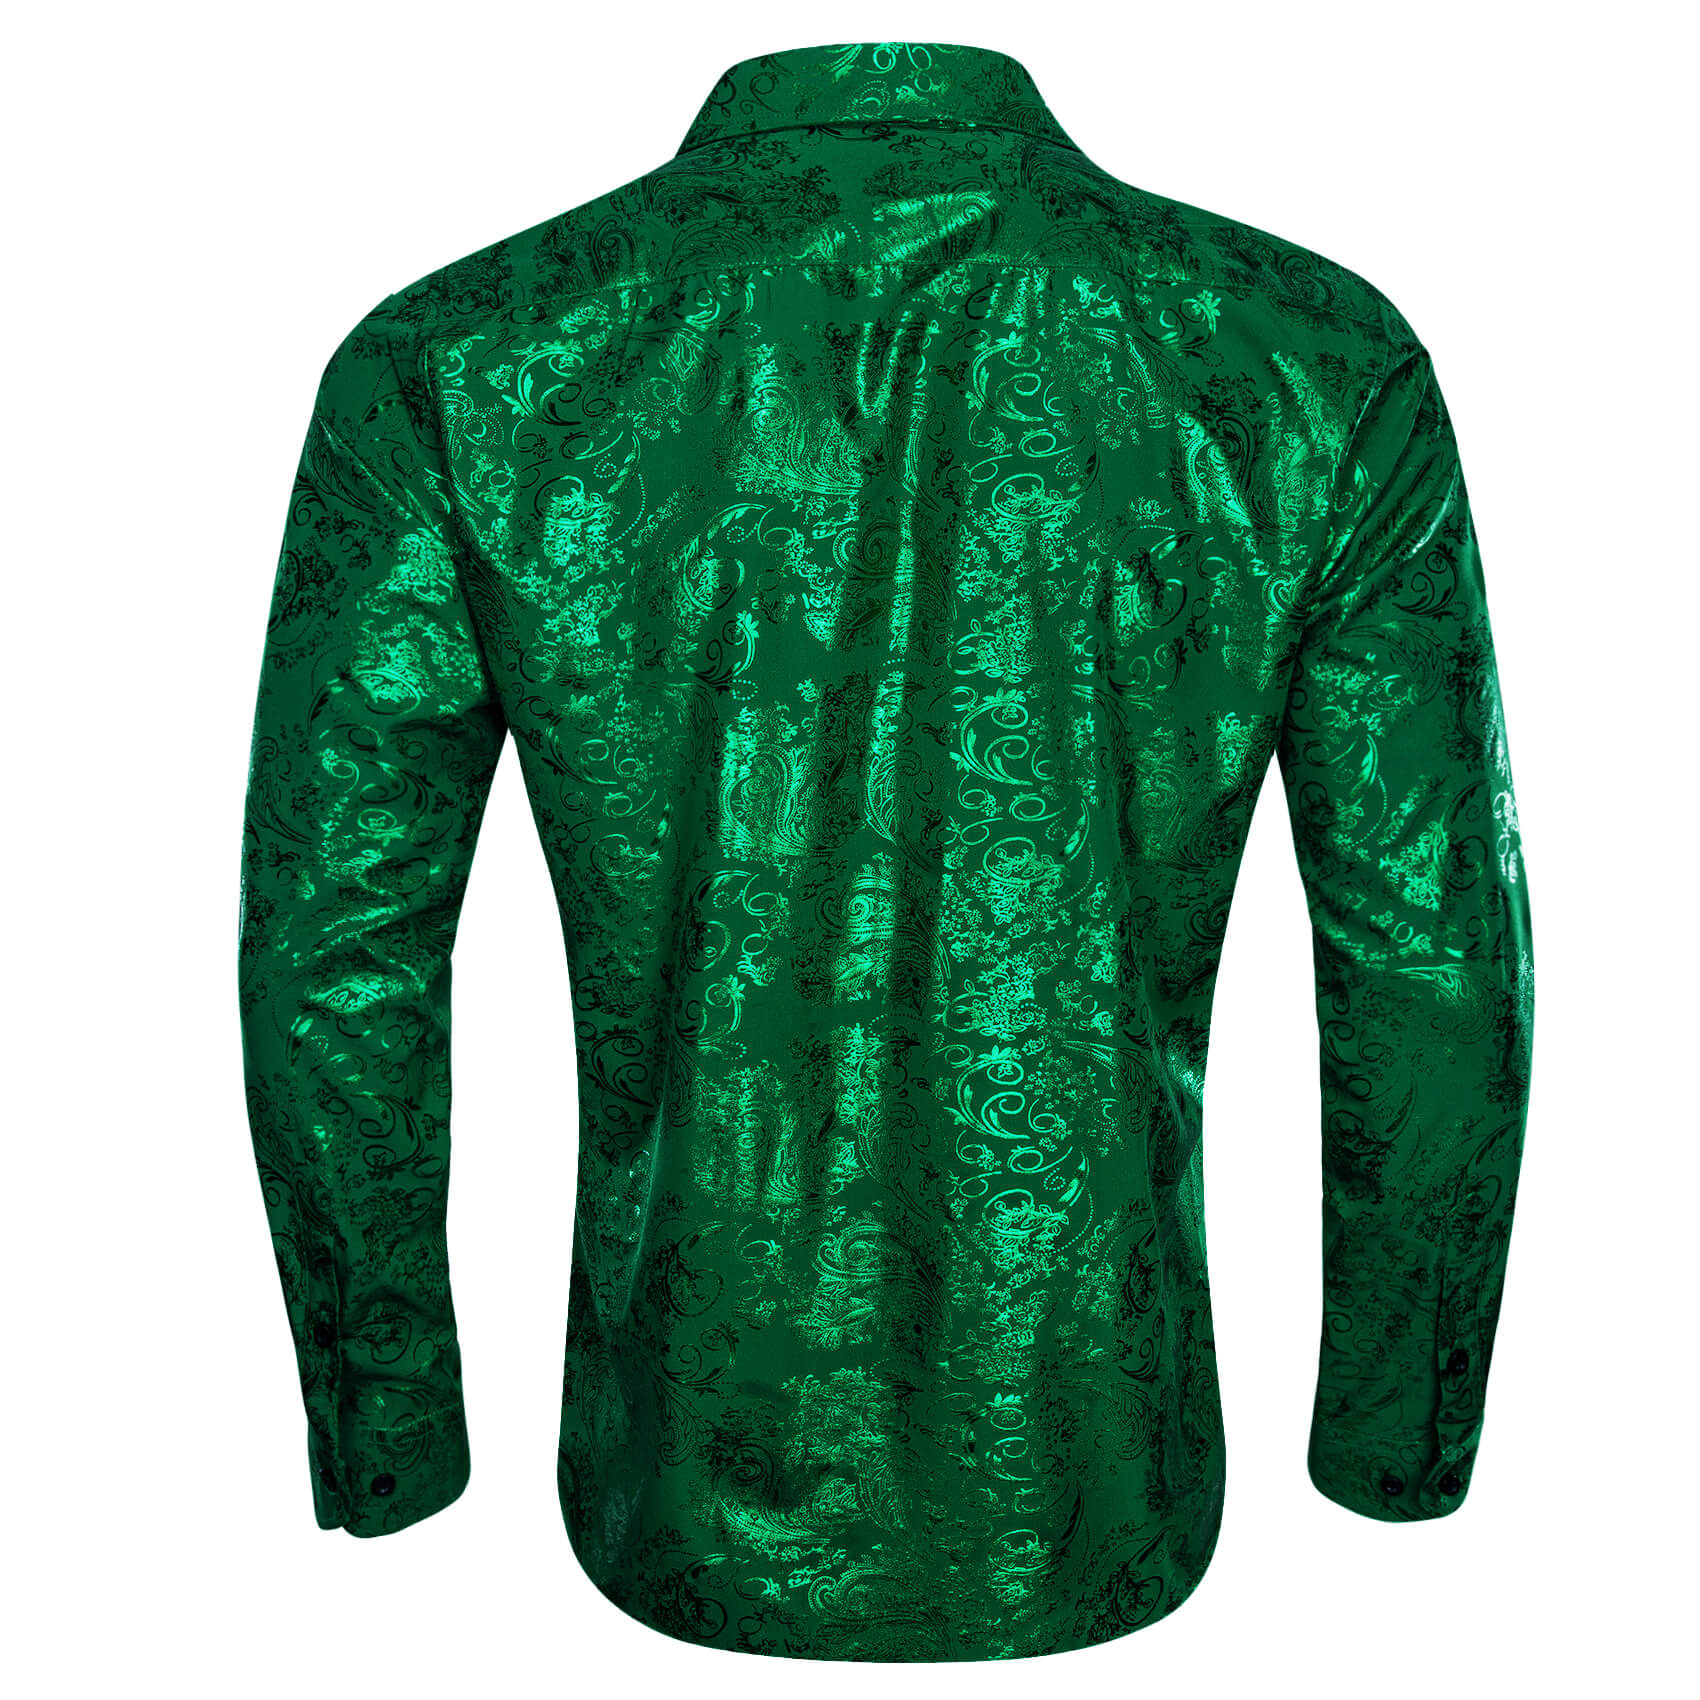 Barry.wang Long Sleeve Shirt Emerald Green Silk Floral Shirt for Men